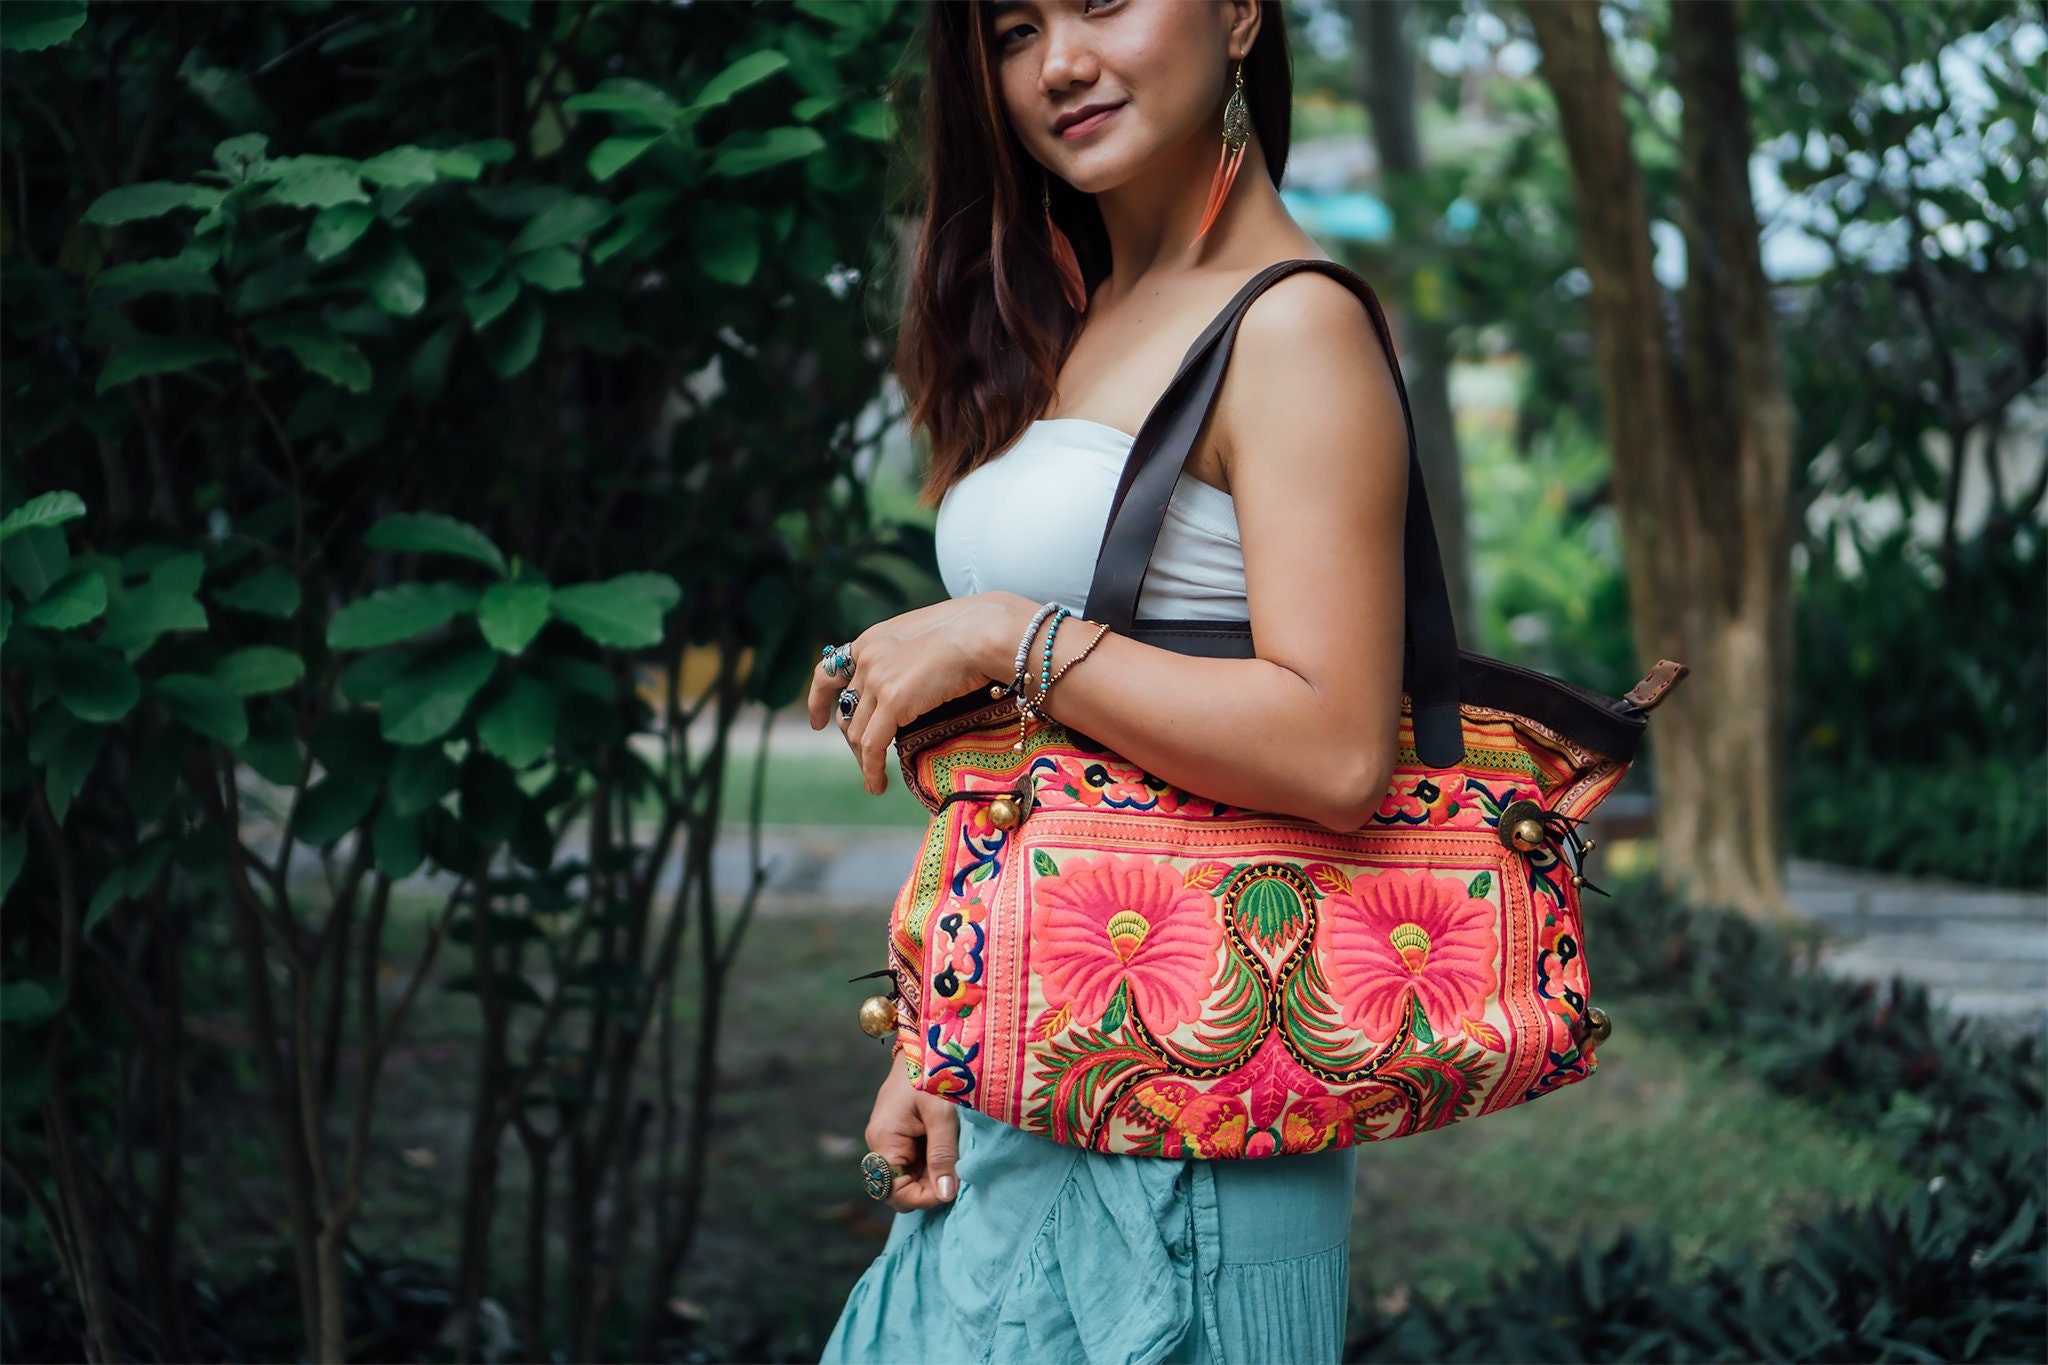 Solid Color Ladies' Fashionable Shoulder Bag, Great Gift For Festivals